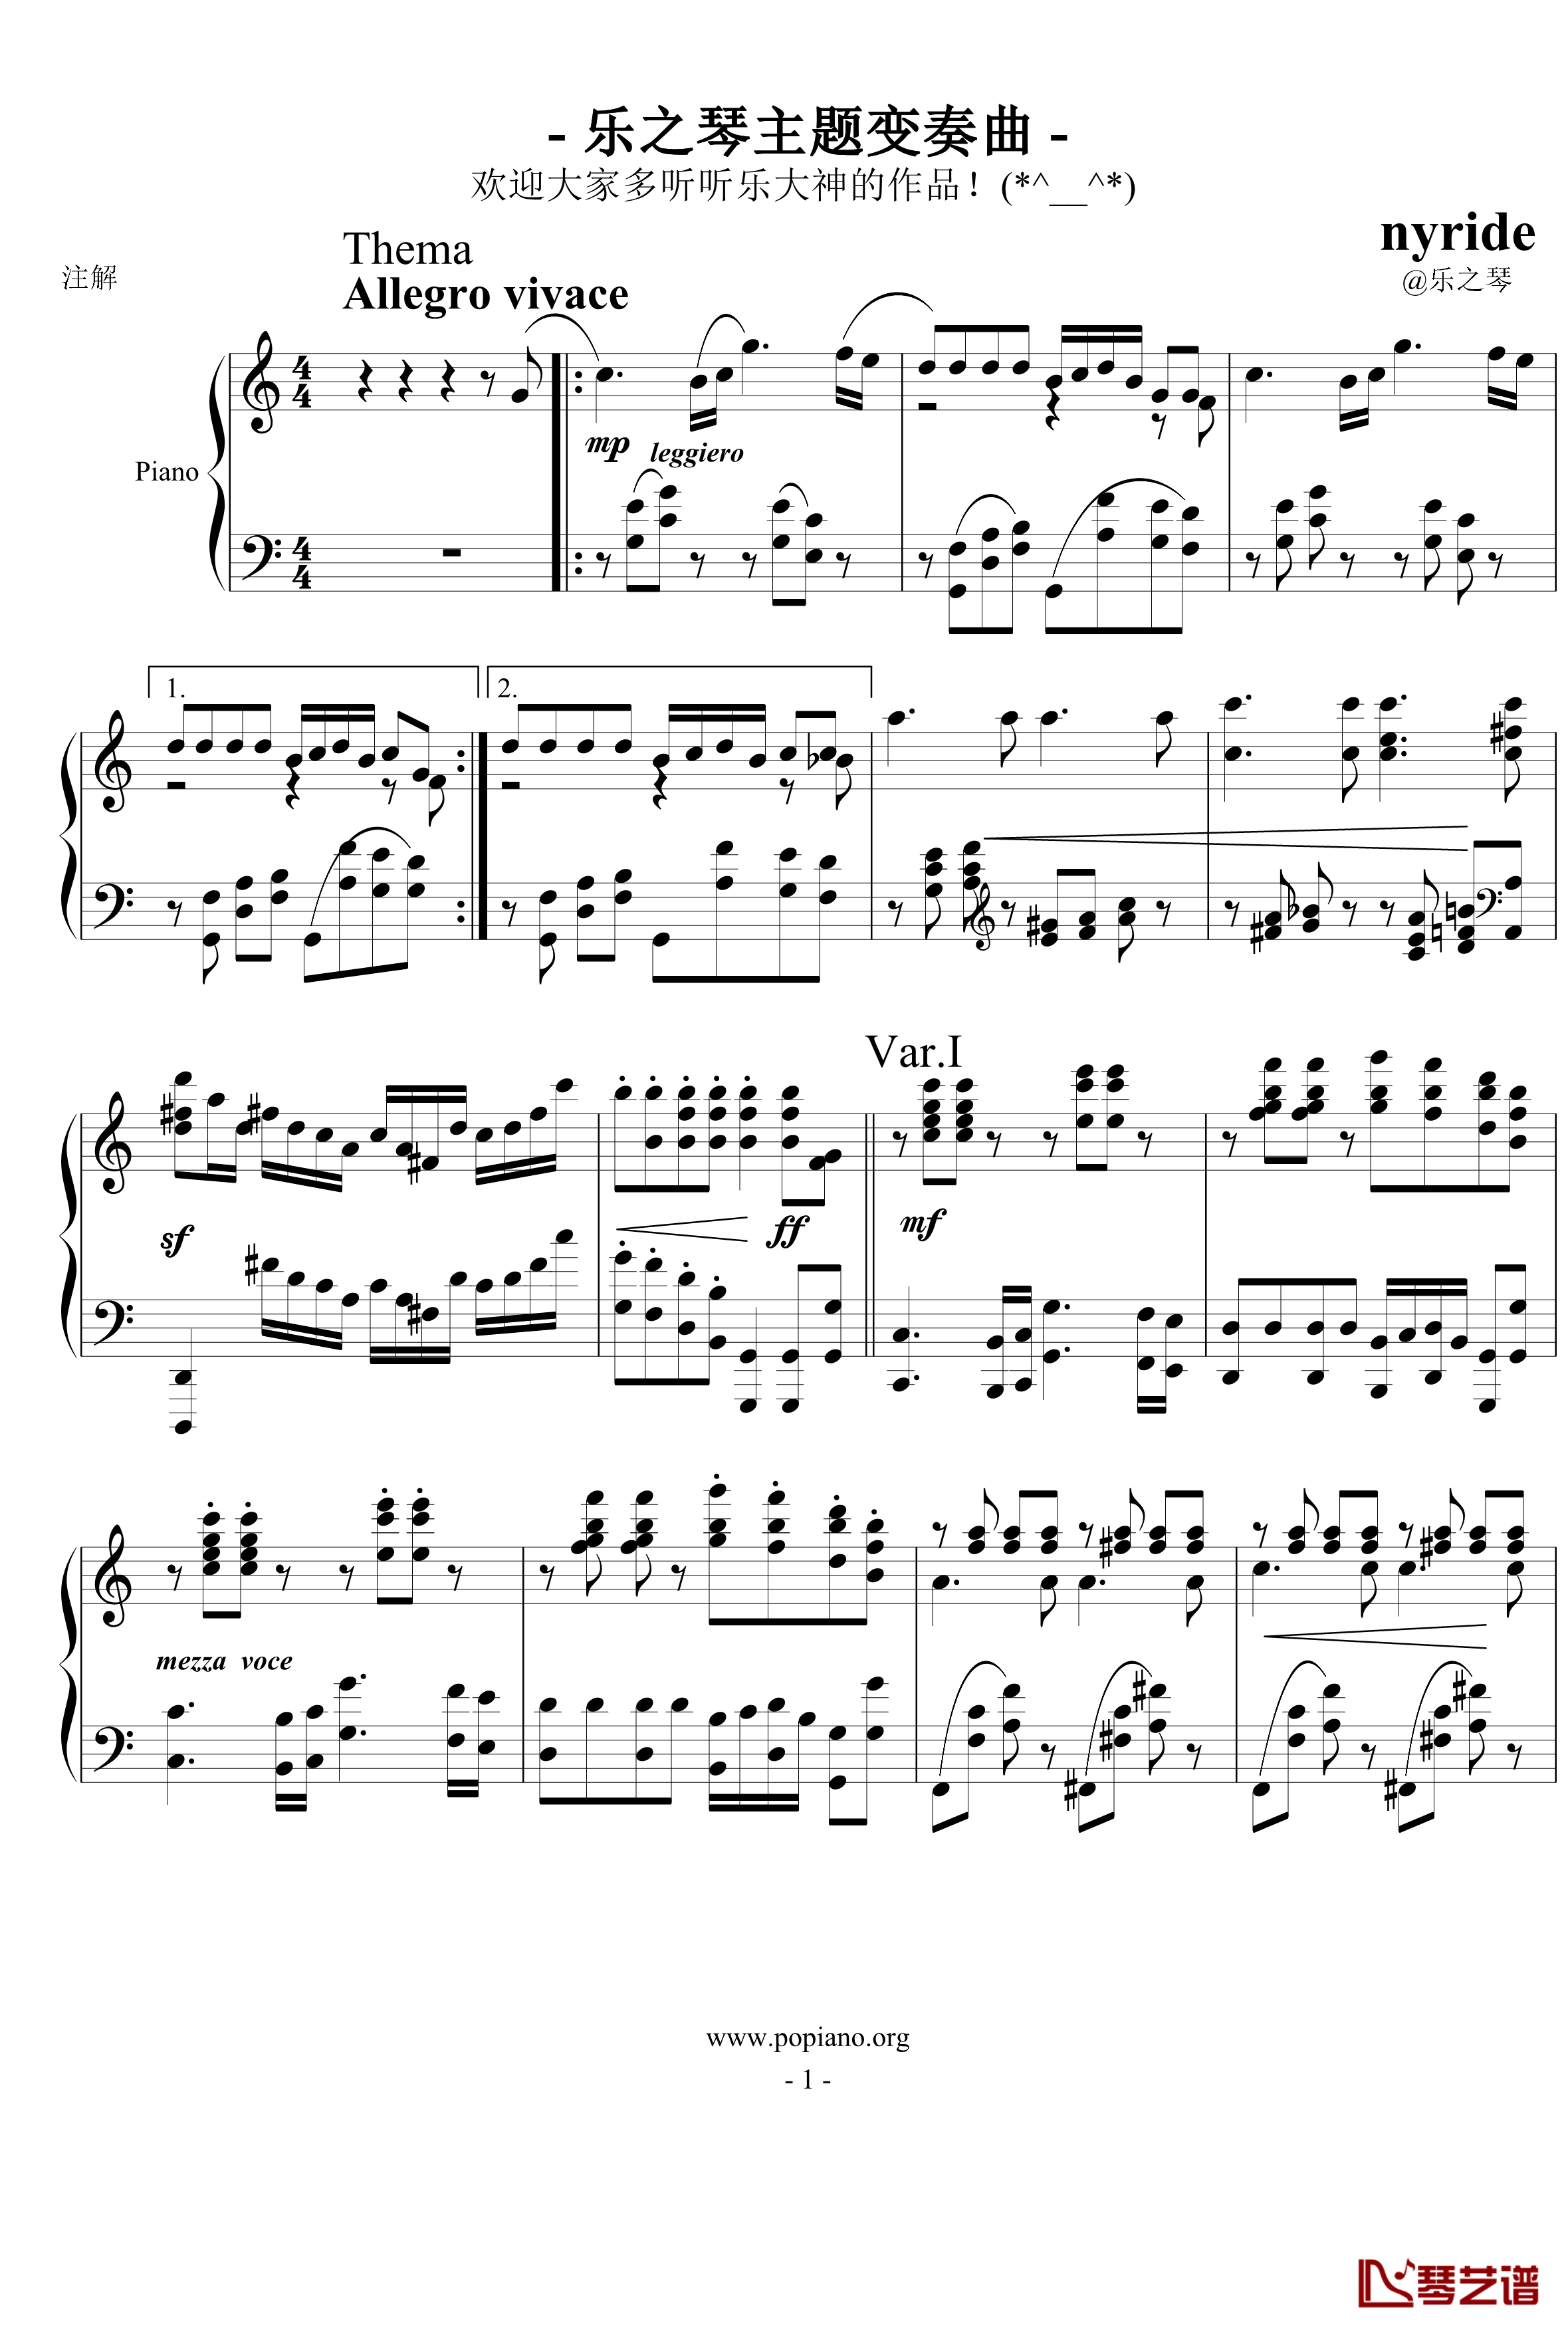 乐之琴主题变奏曲钢琴谱-nyride1